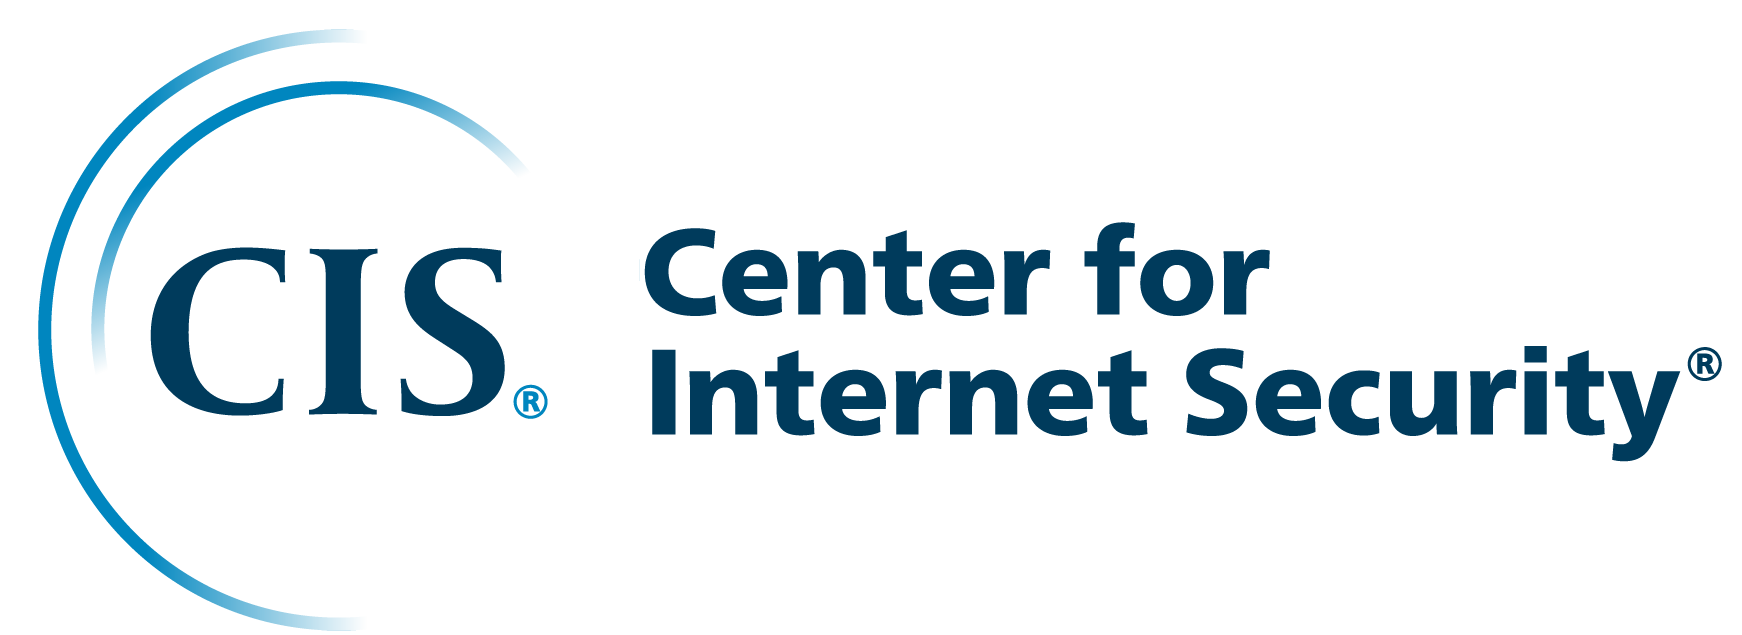 Center for Internet Security (CIS) logo